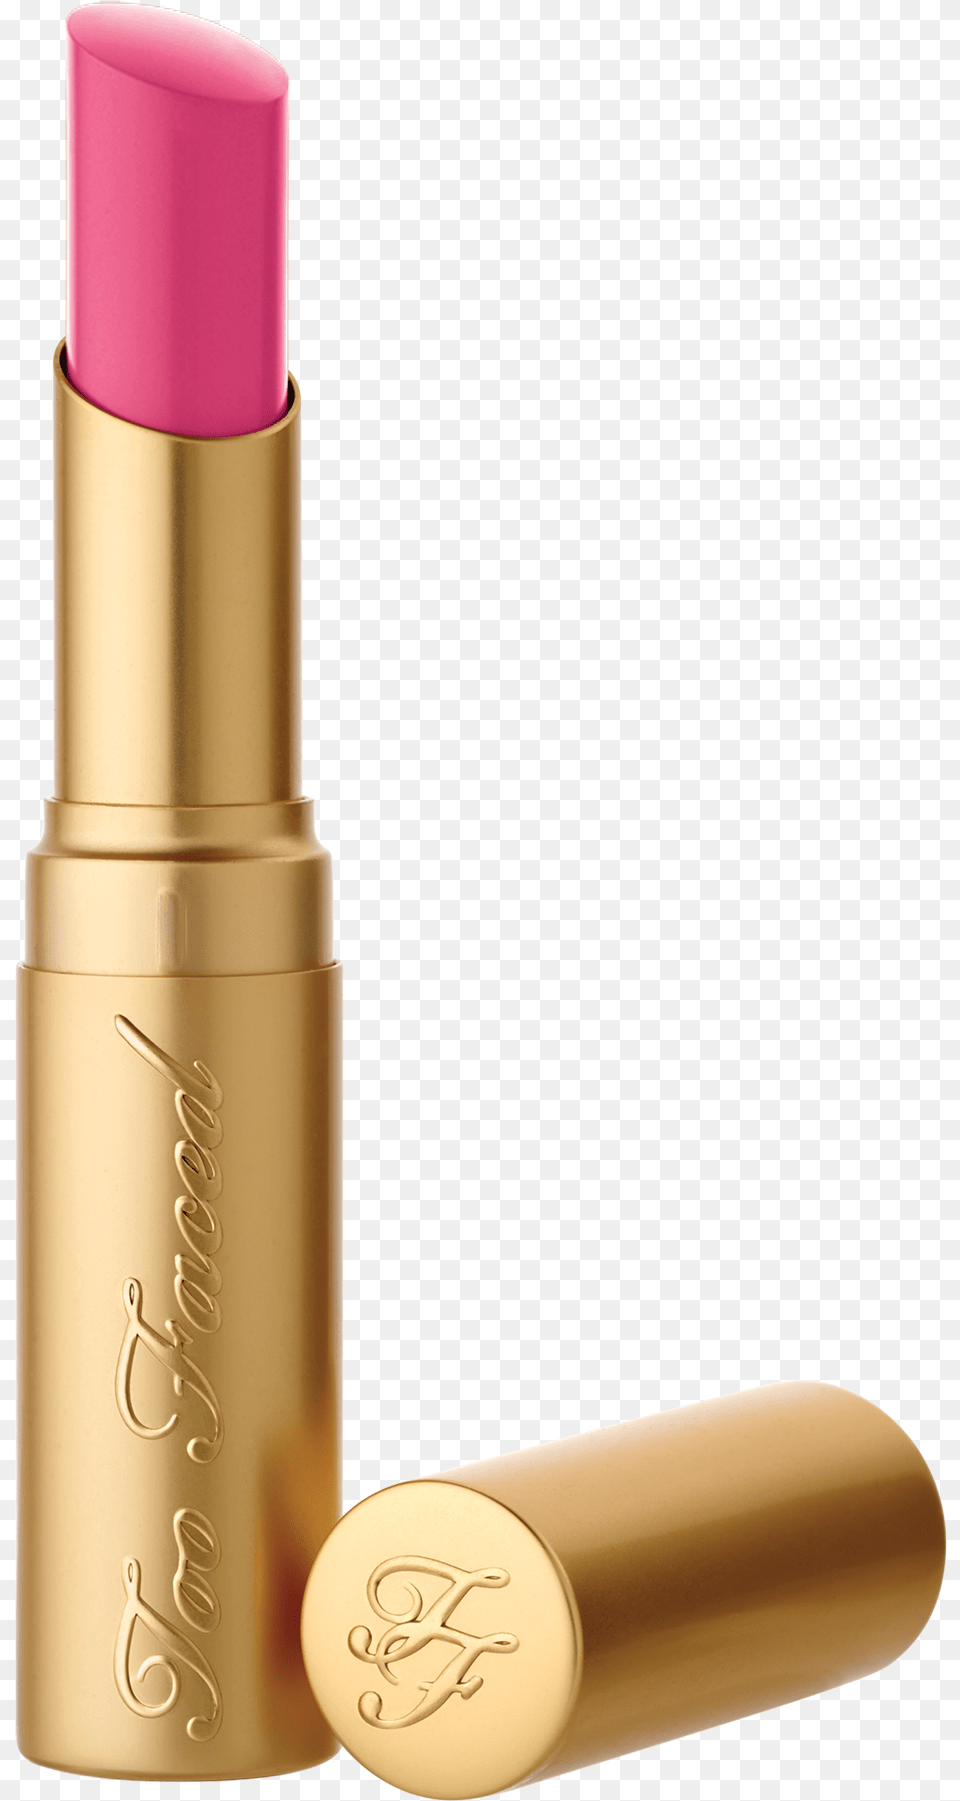 Transparent Dubble Bubble, Cosmetics, Lipstick Png Image